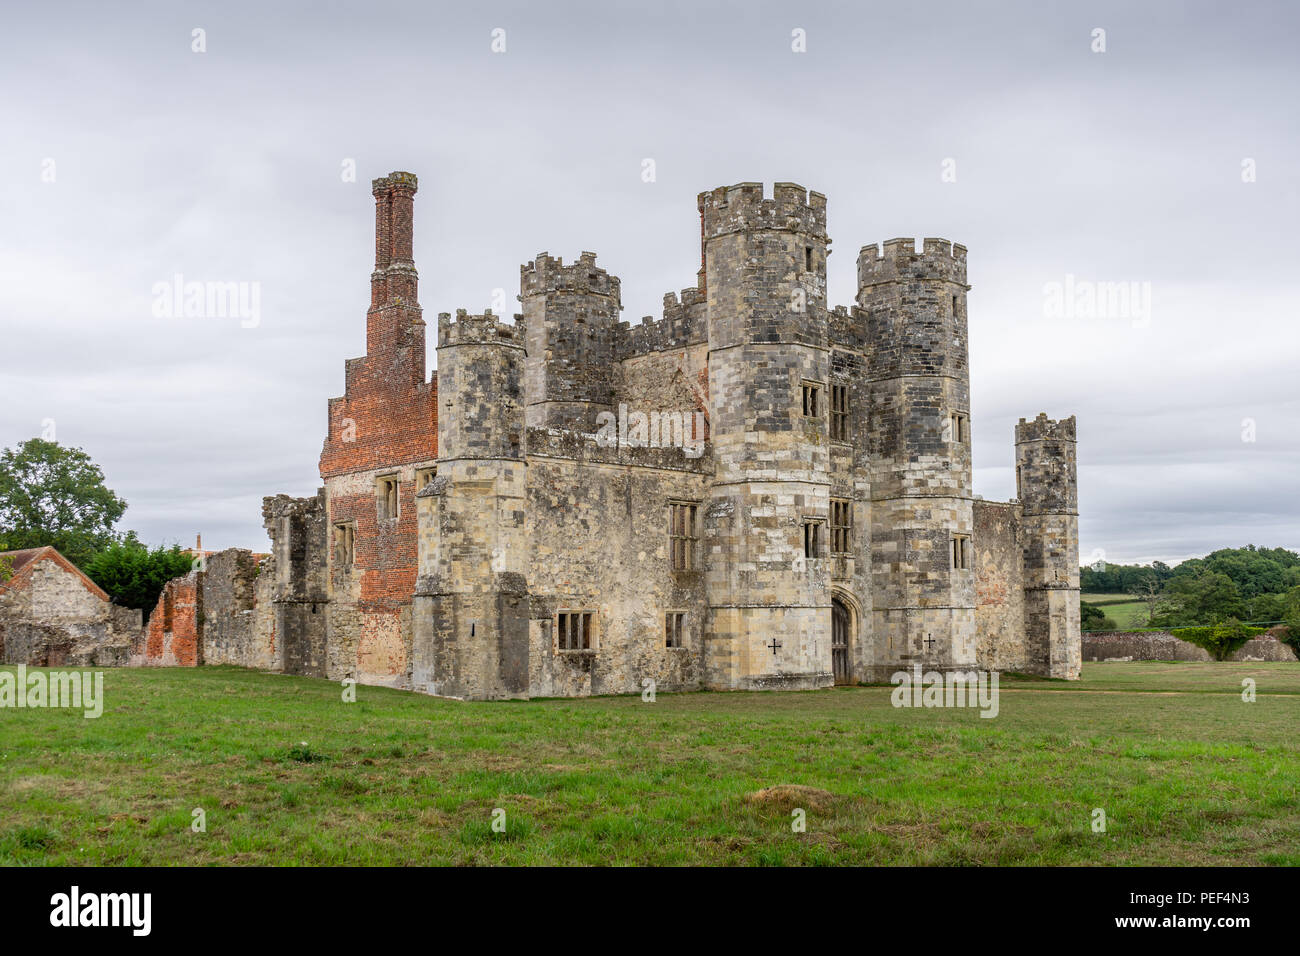 Los restos de la Abadía de Titchfield medieval rodeado por la campiña de Hampshire, sitio del Patrimonio Inglés, Titchfield, Hampshire, Inglaterra, Reino Unido. Foto de stock